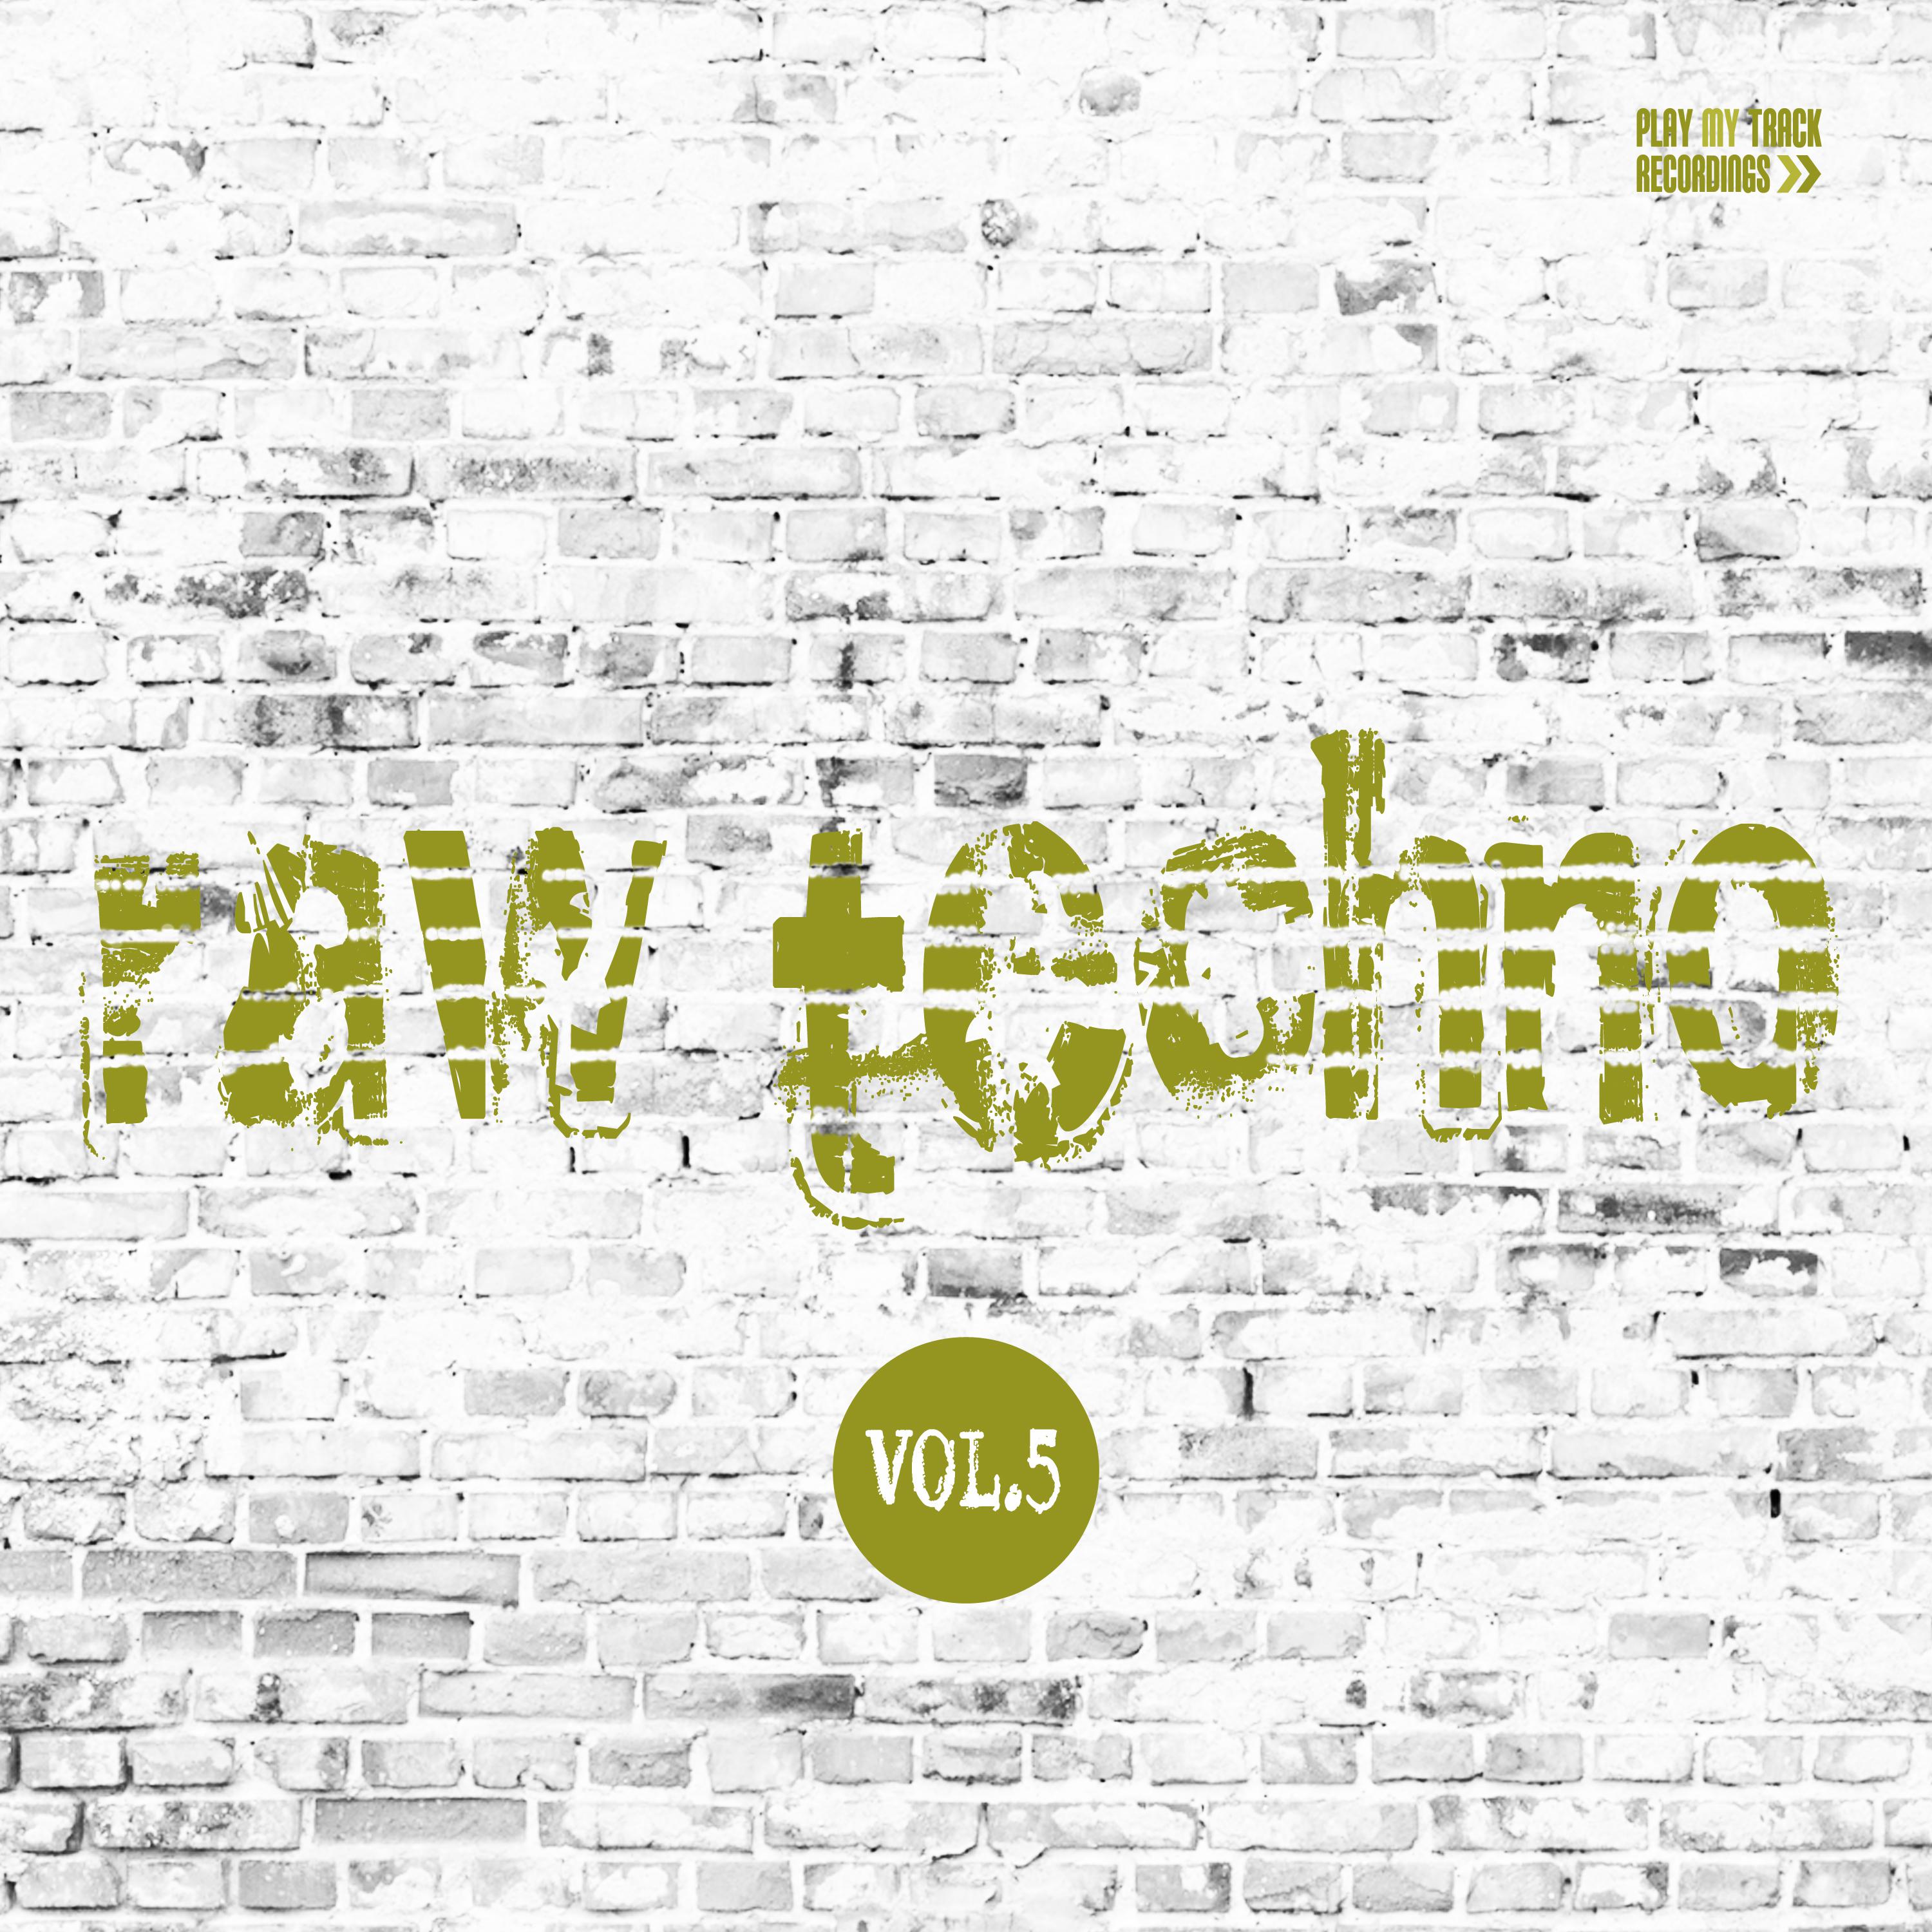 Raw Techno, Vol. 5